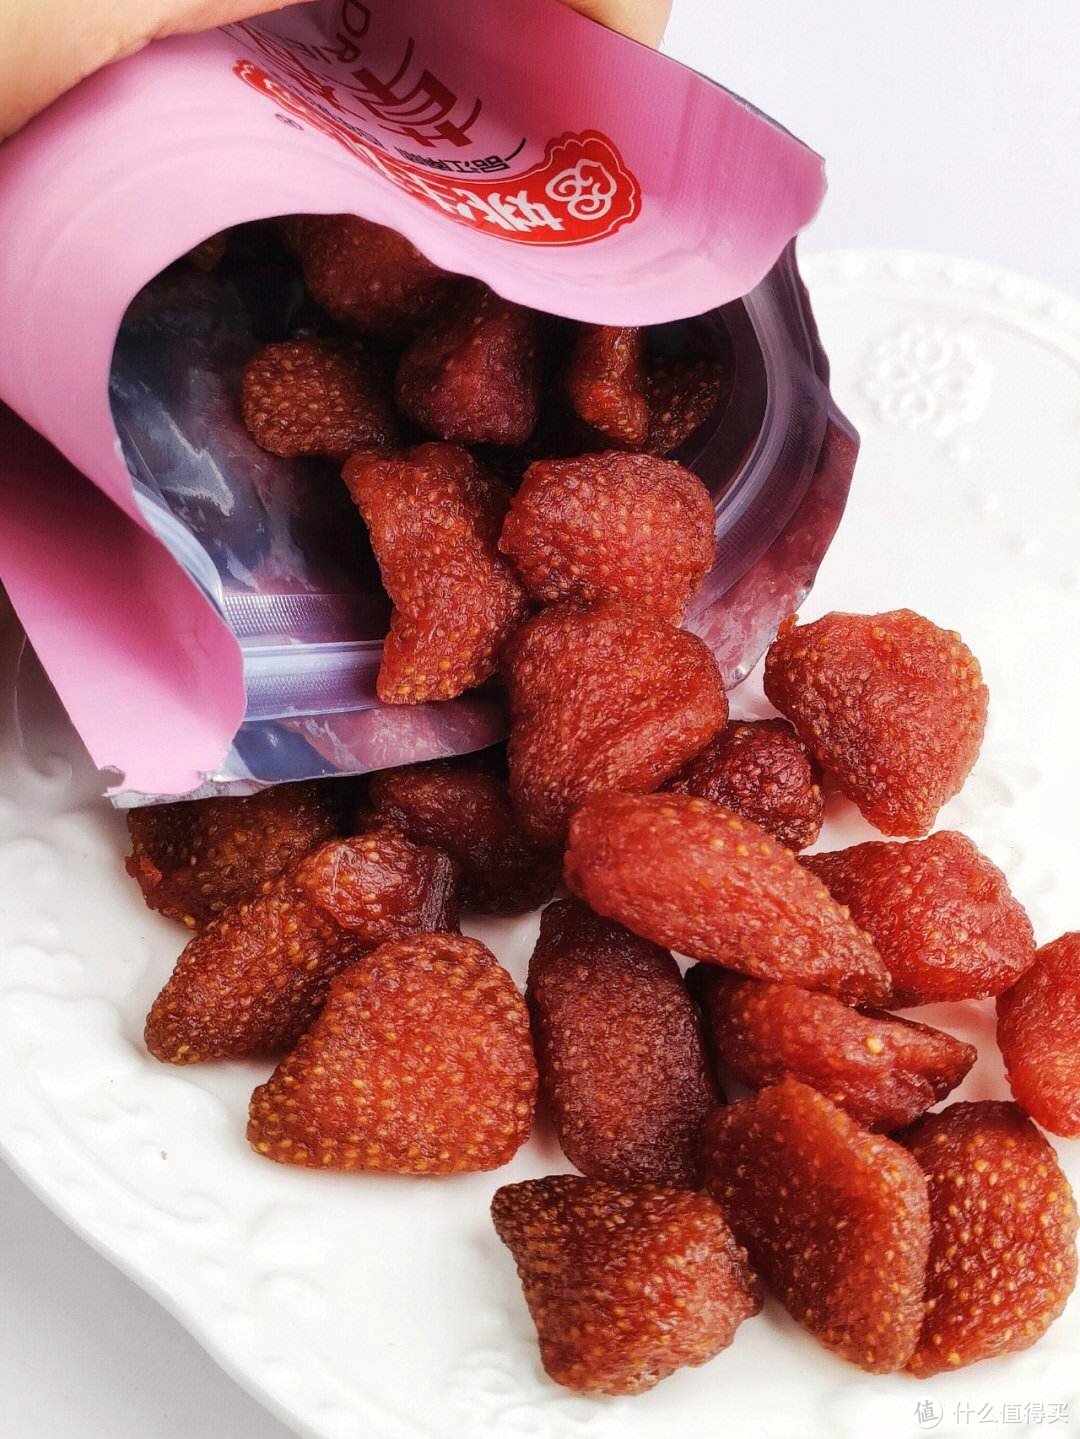 草莓干：低热量、高营养价值的零食选择